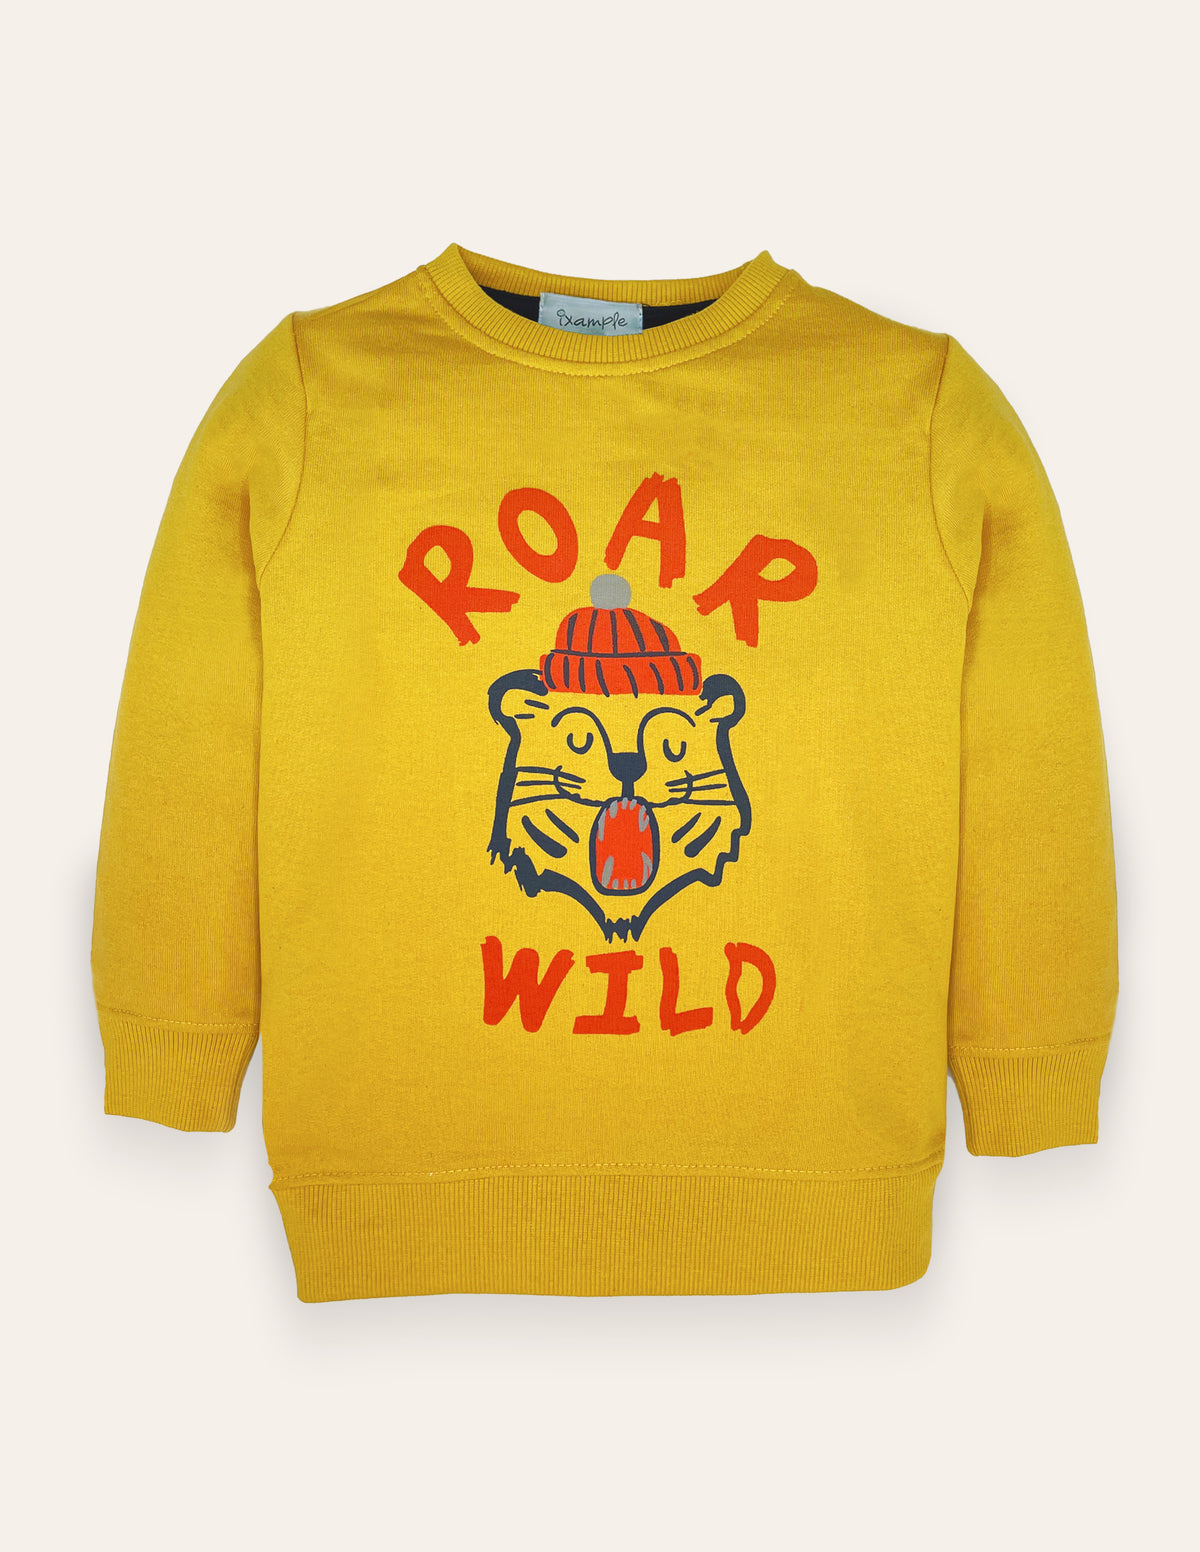 Roar Wild Sweatshirt